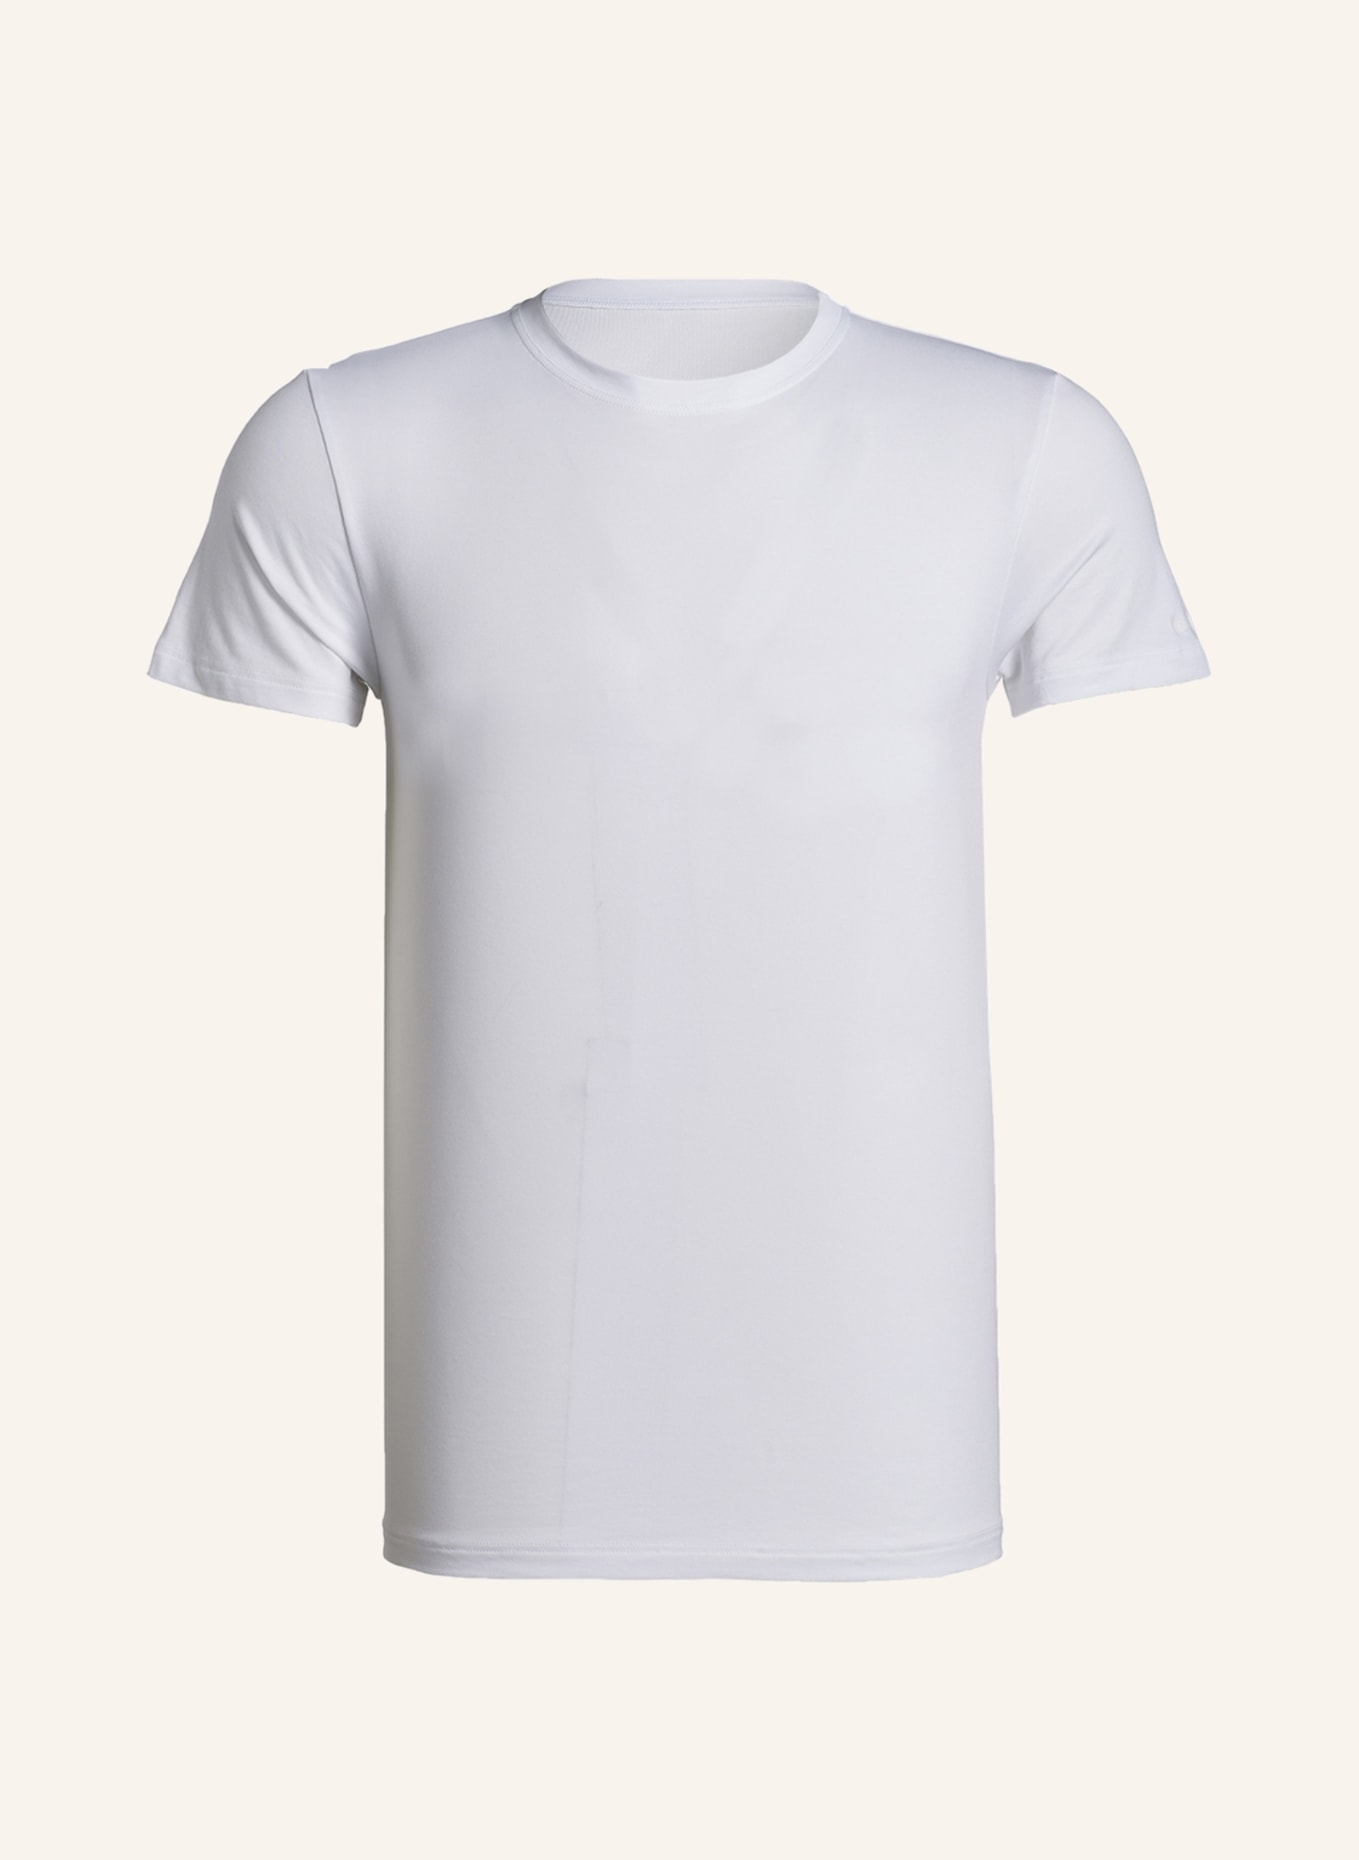 mey T-Shirt Serie SOFTWARE, Farbe: WEISS (Bild 1)